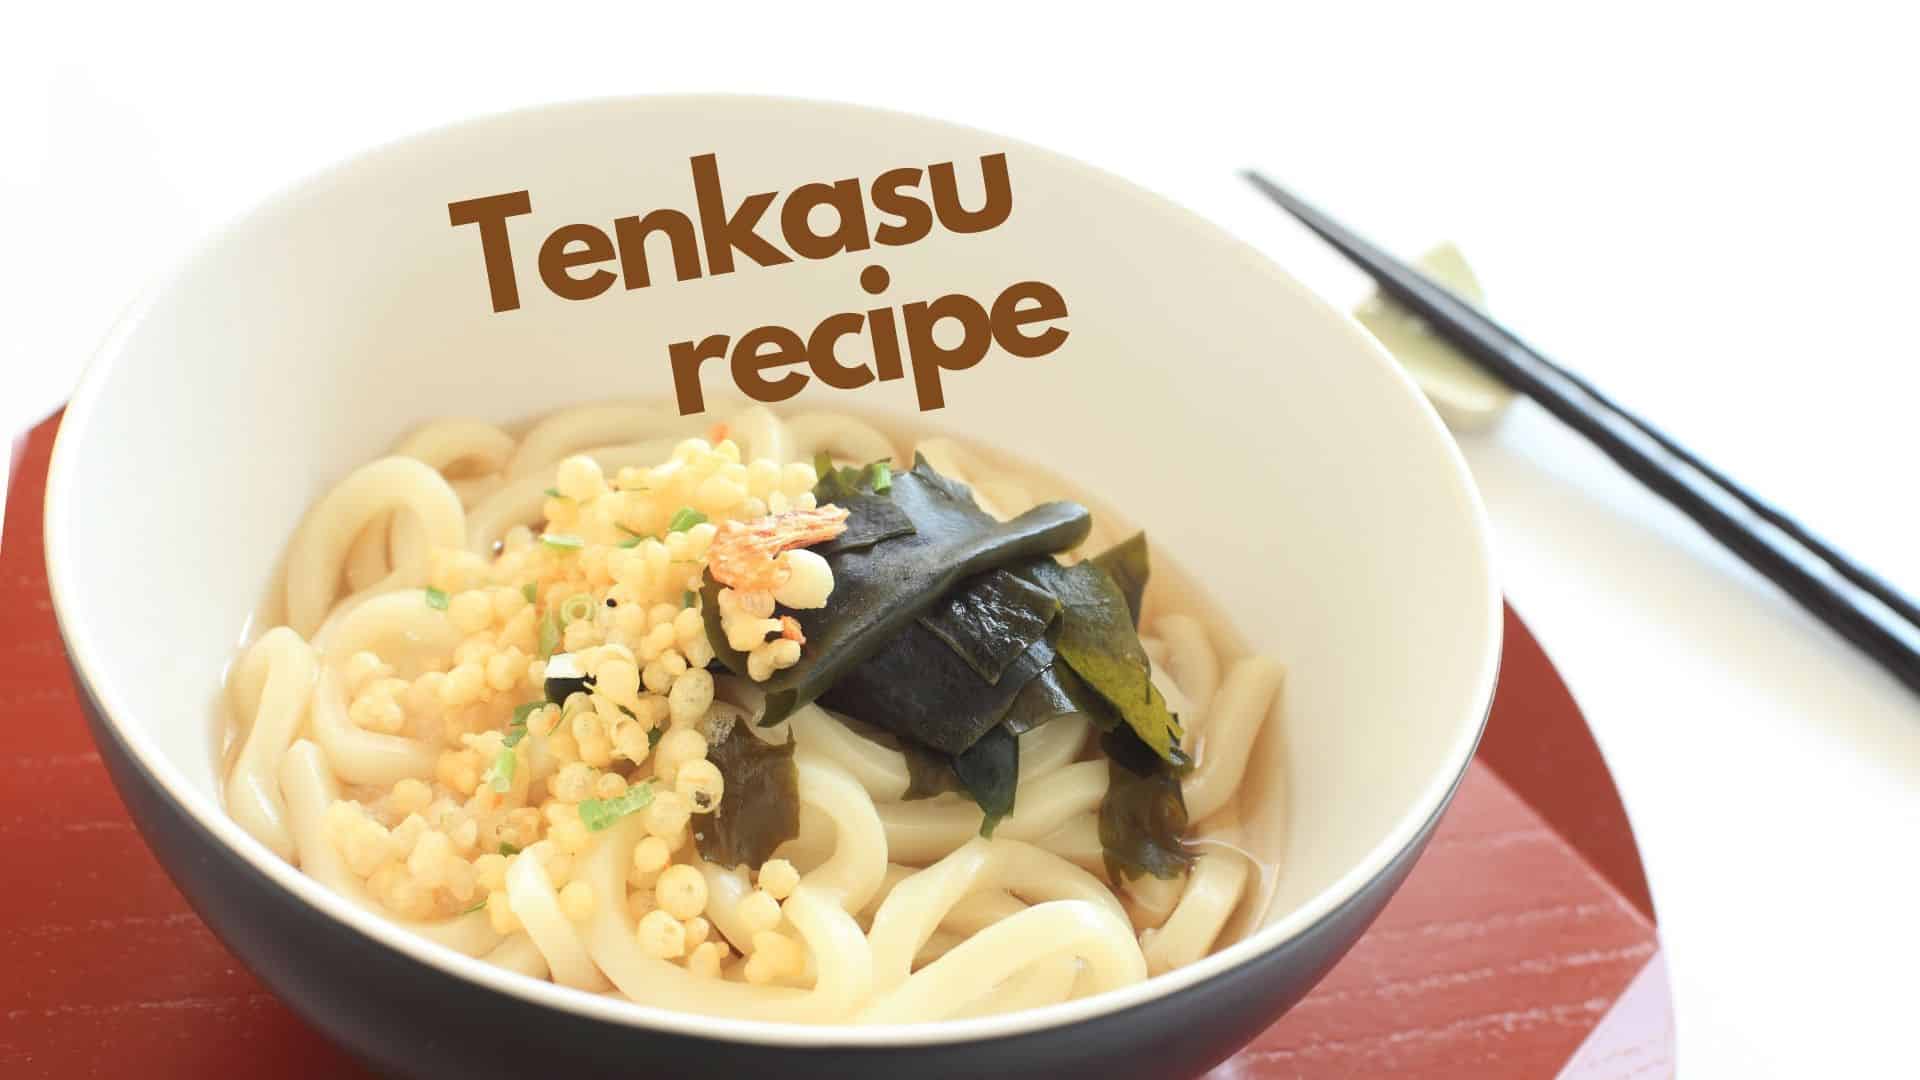 Tenkasu là gì? Giới thiệu về Agedama Tempura Flakes và công thức của nó